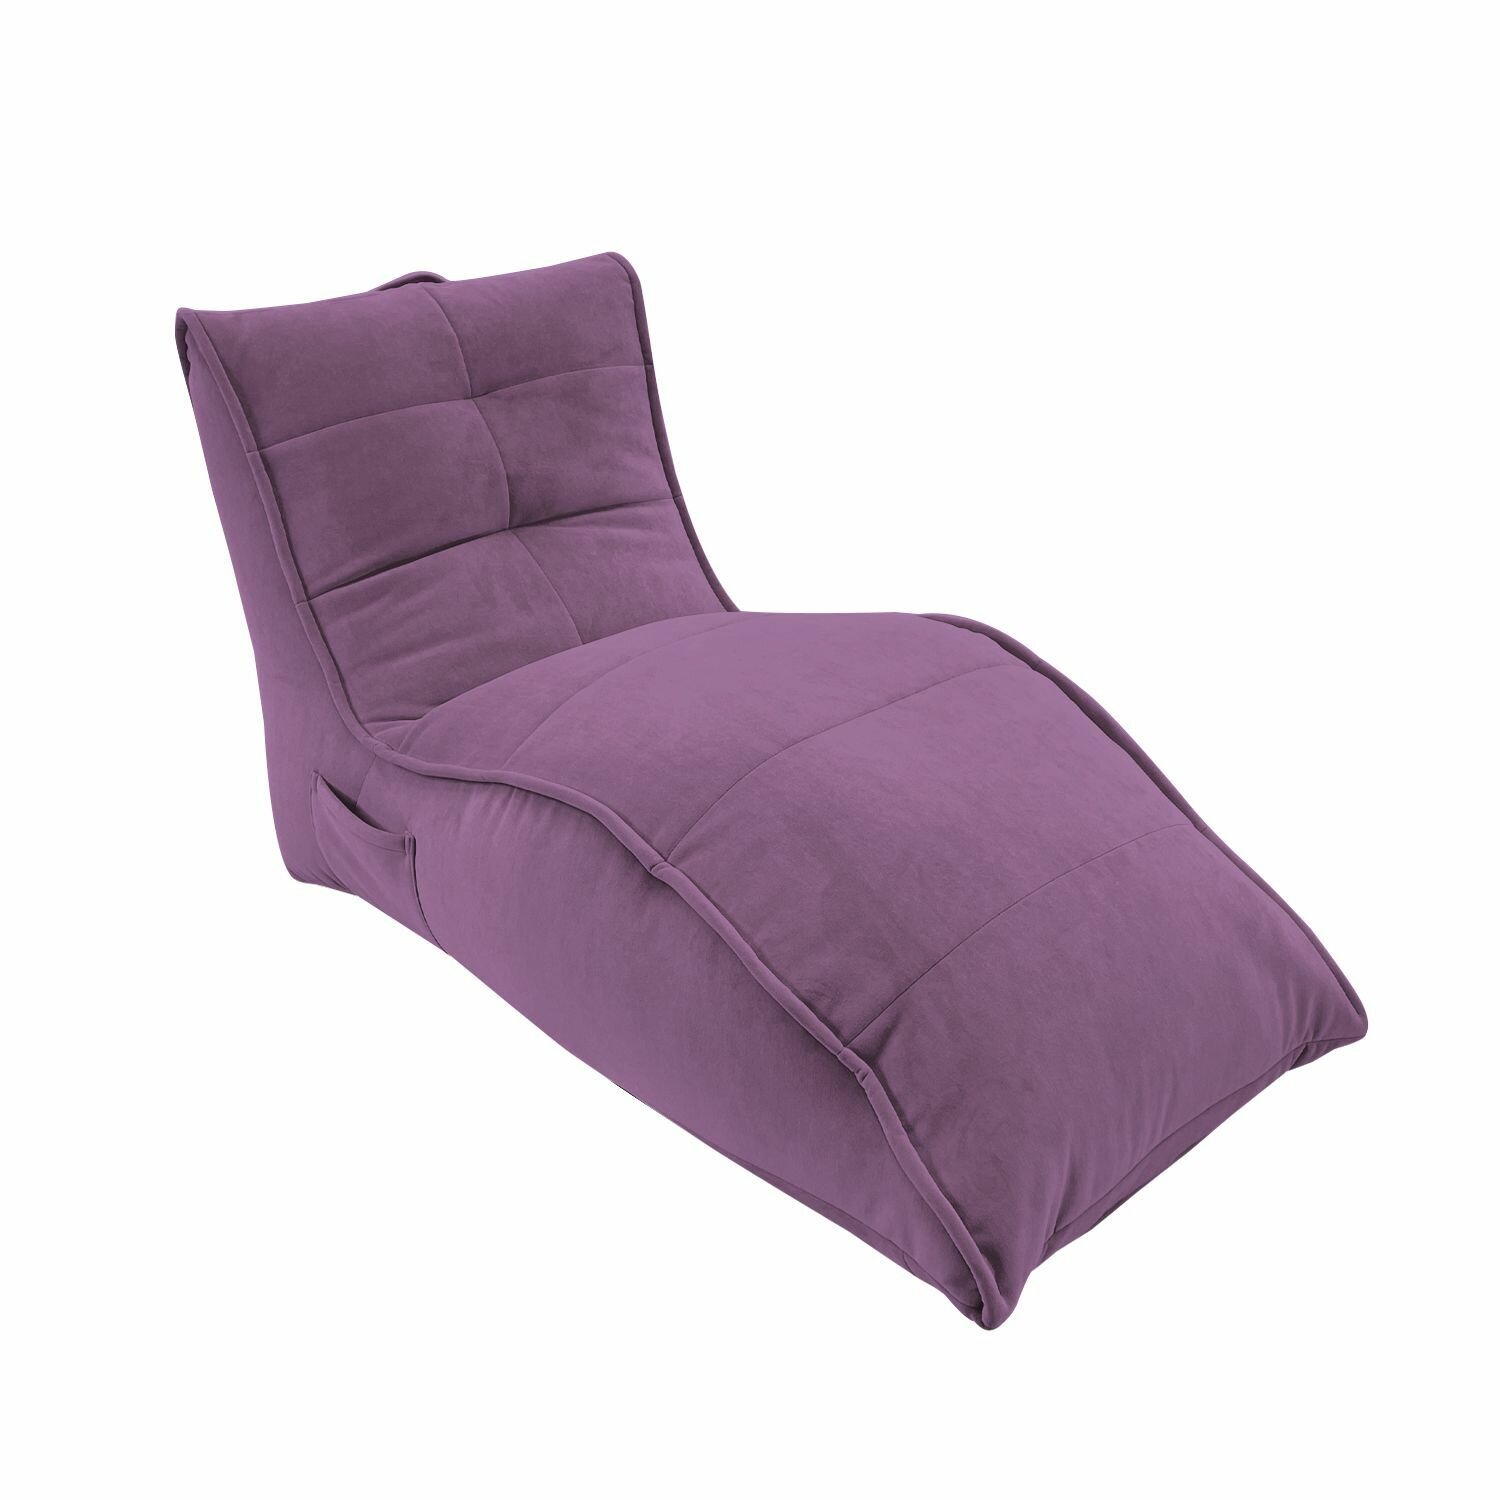 Бескаркасное кресло для отдыха aLounge - Avatar Sofa - Sakura Pink (велюр, фиолетовый) - лаунж мебель в гостиную, спальню, детскую, на балкон